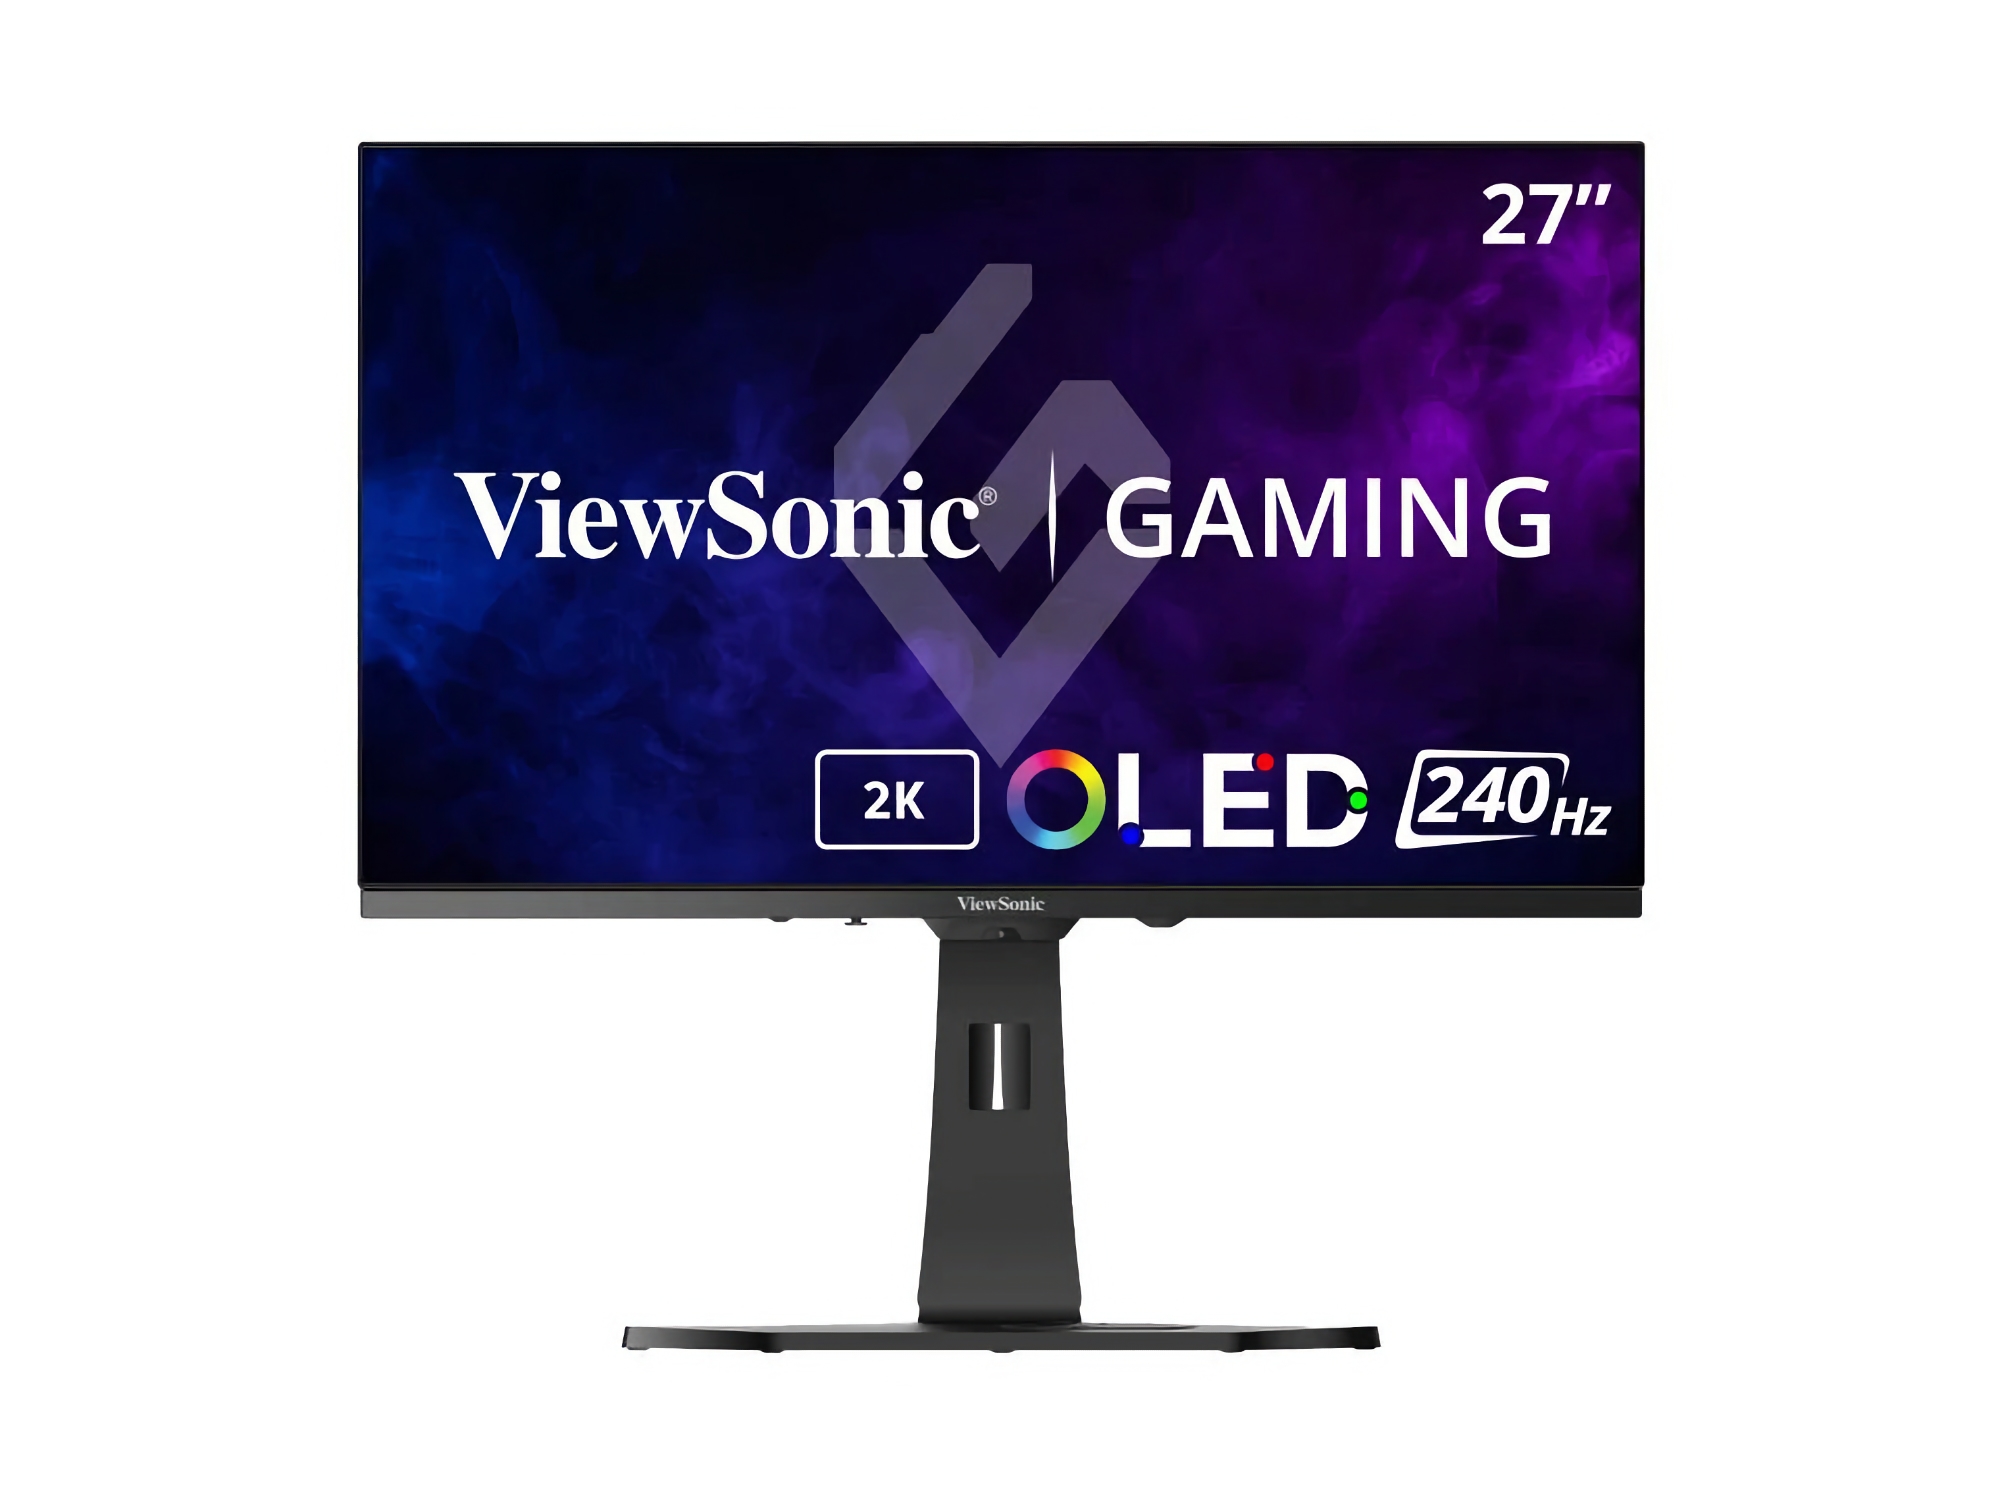 ViewSonic ha presentado el XG272-2K: un monitor para juegos con pantalla OLED de 240 Hz